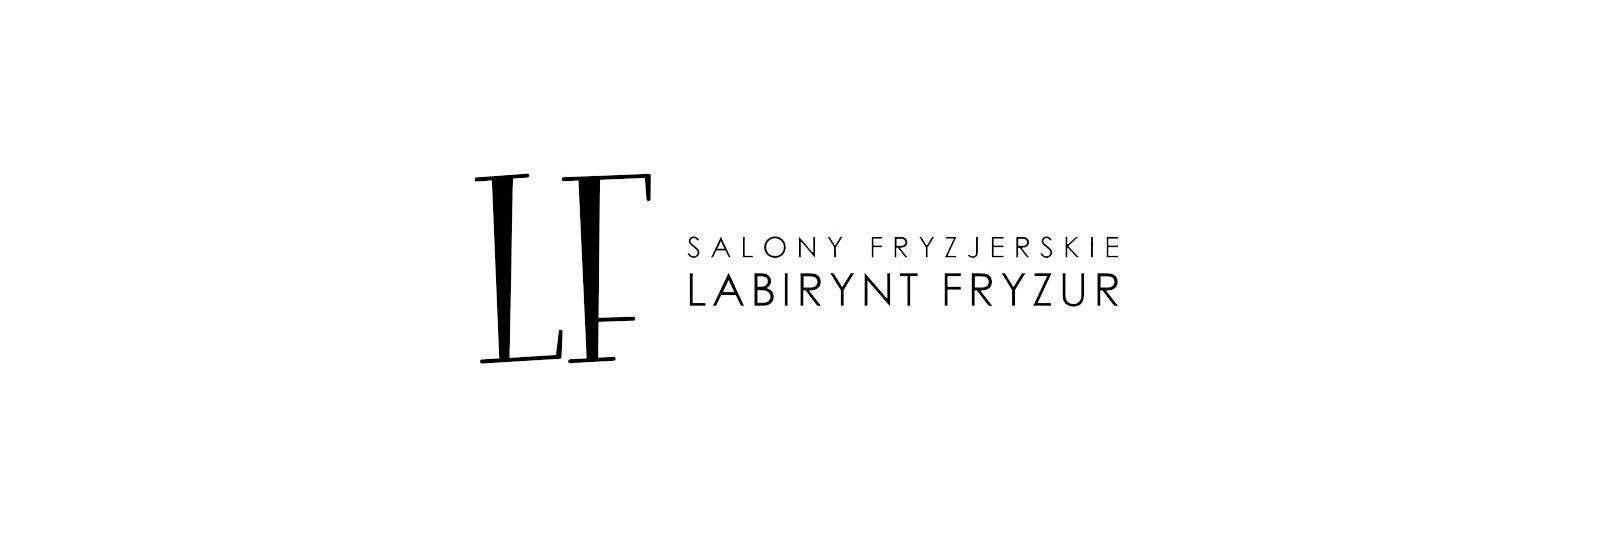 LF Academy, Poznań, salony-fryzjerskie-labirynt-fryzur